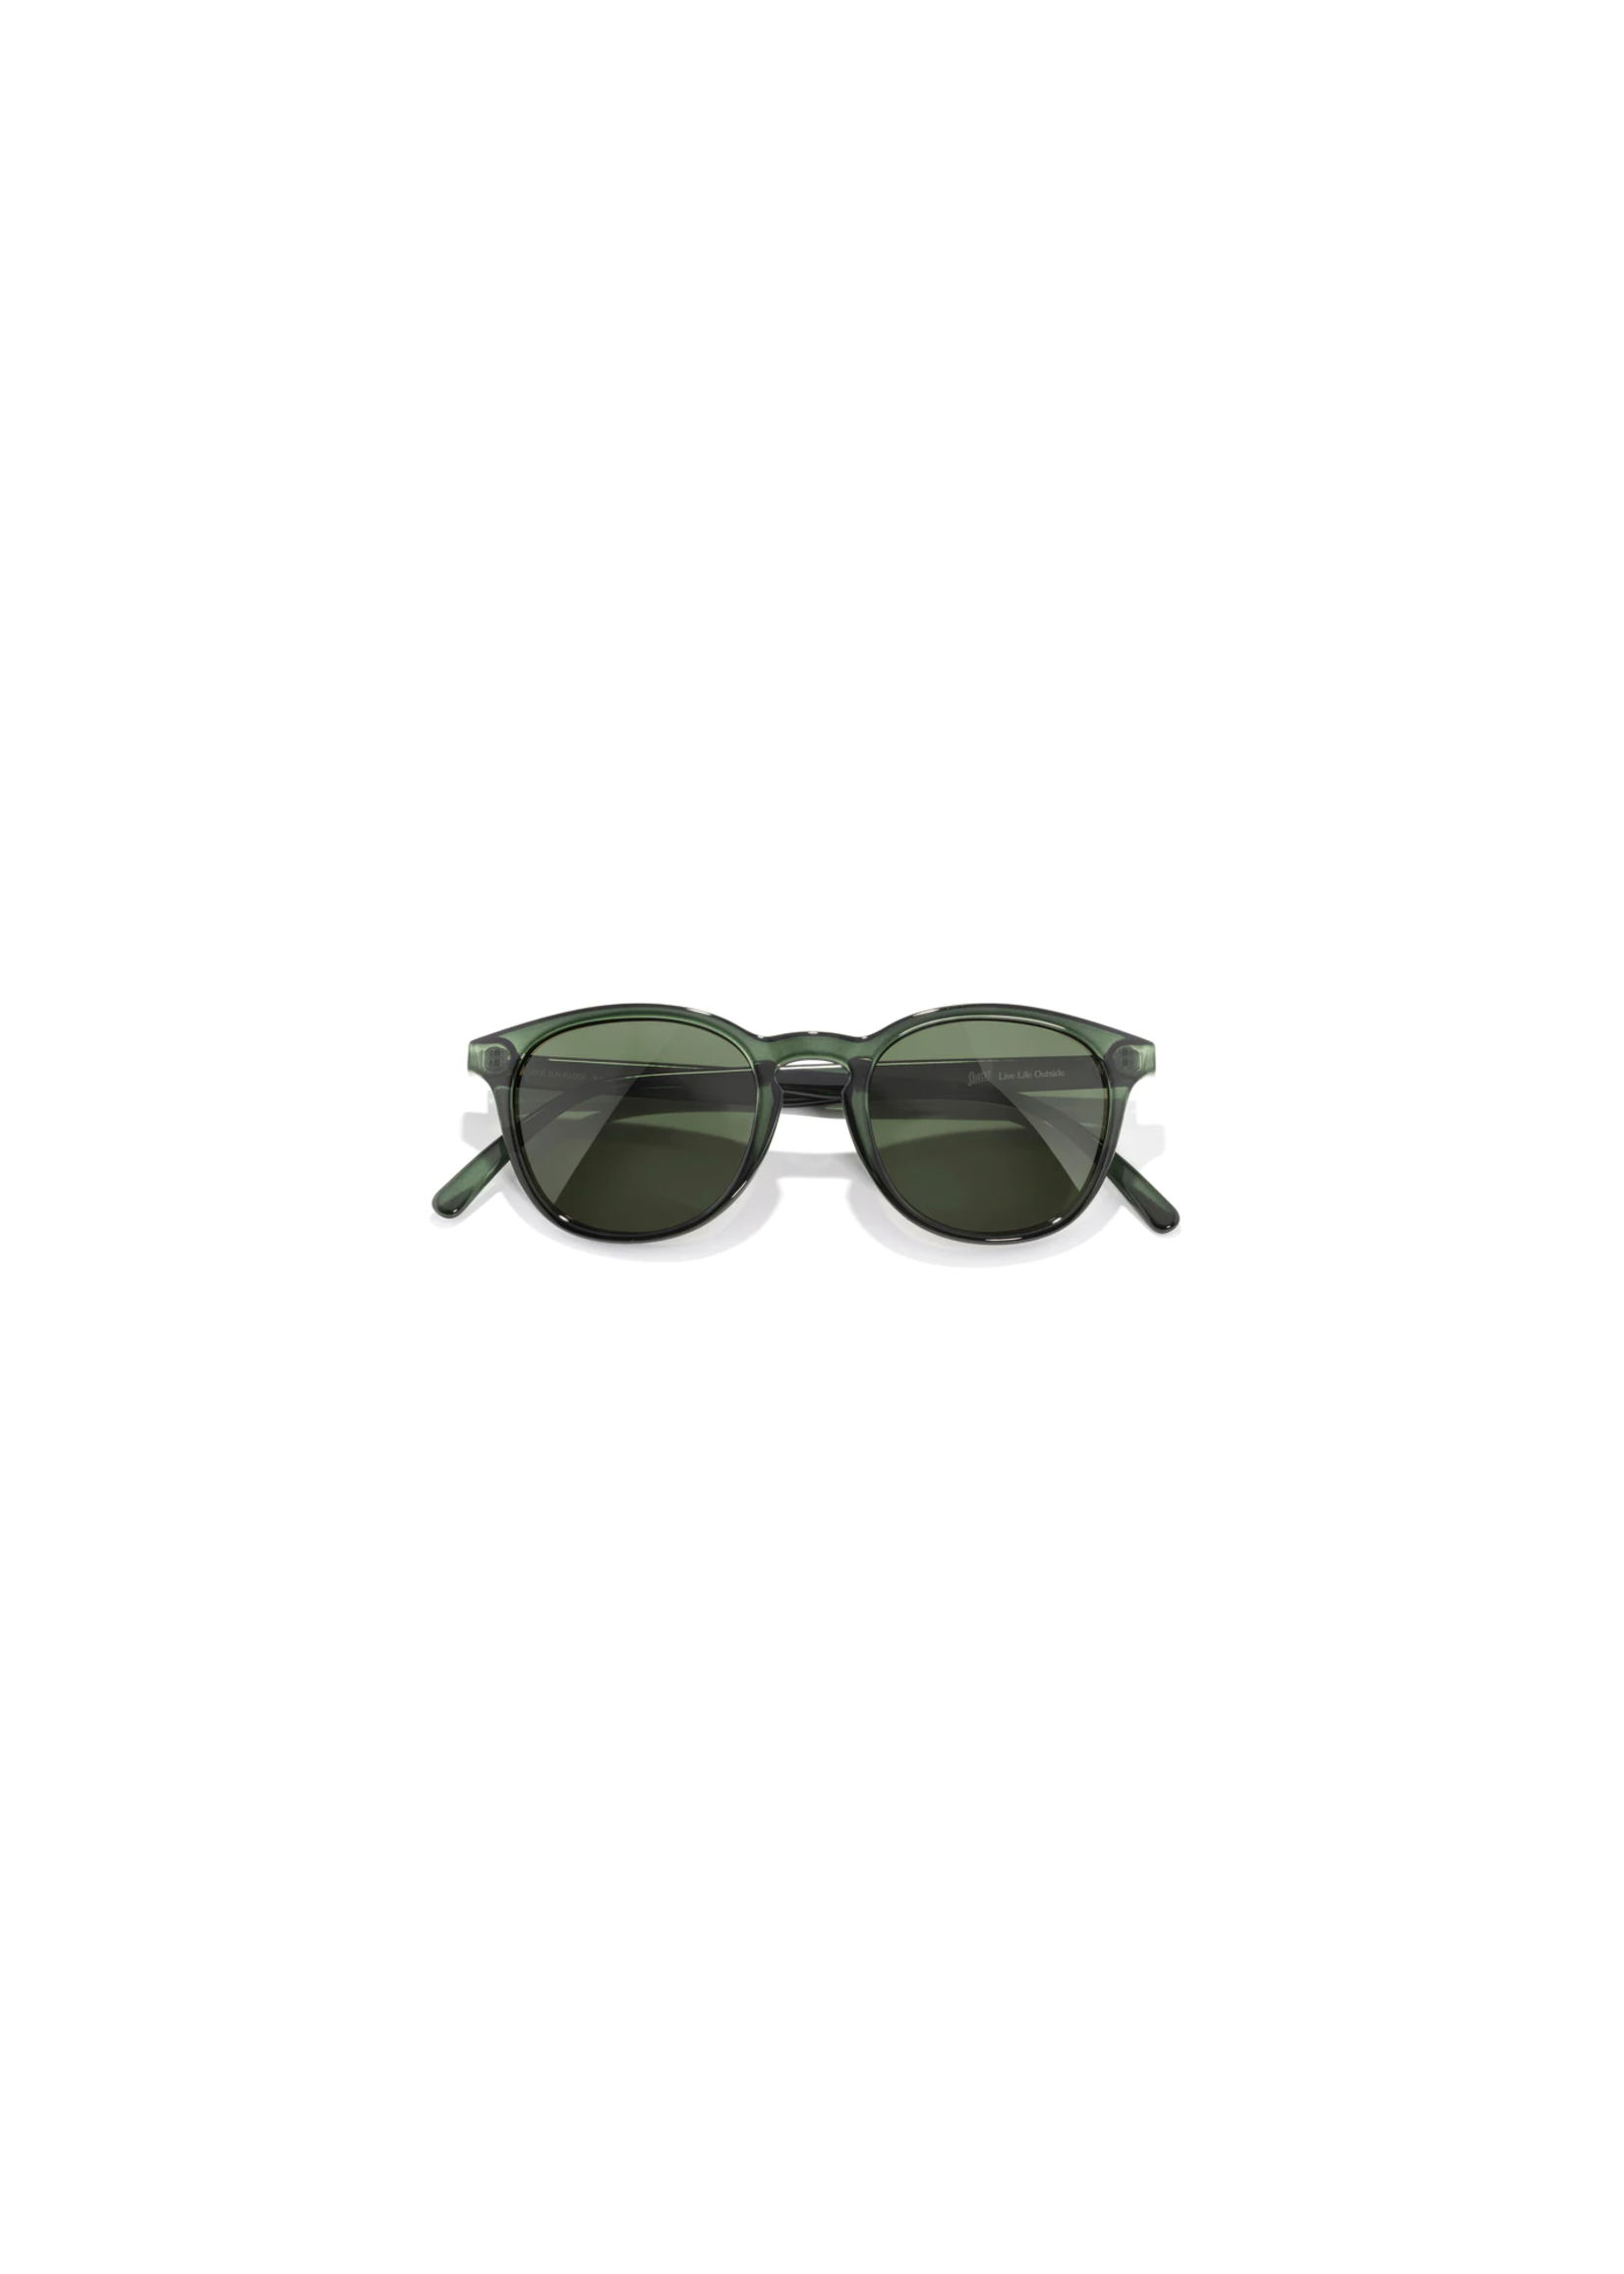 Sunski Sunski - Sunglasses 58